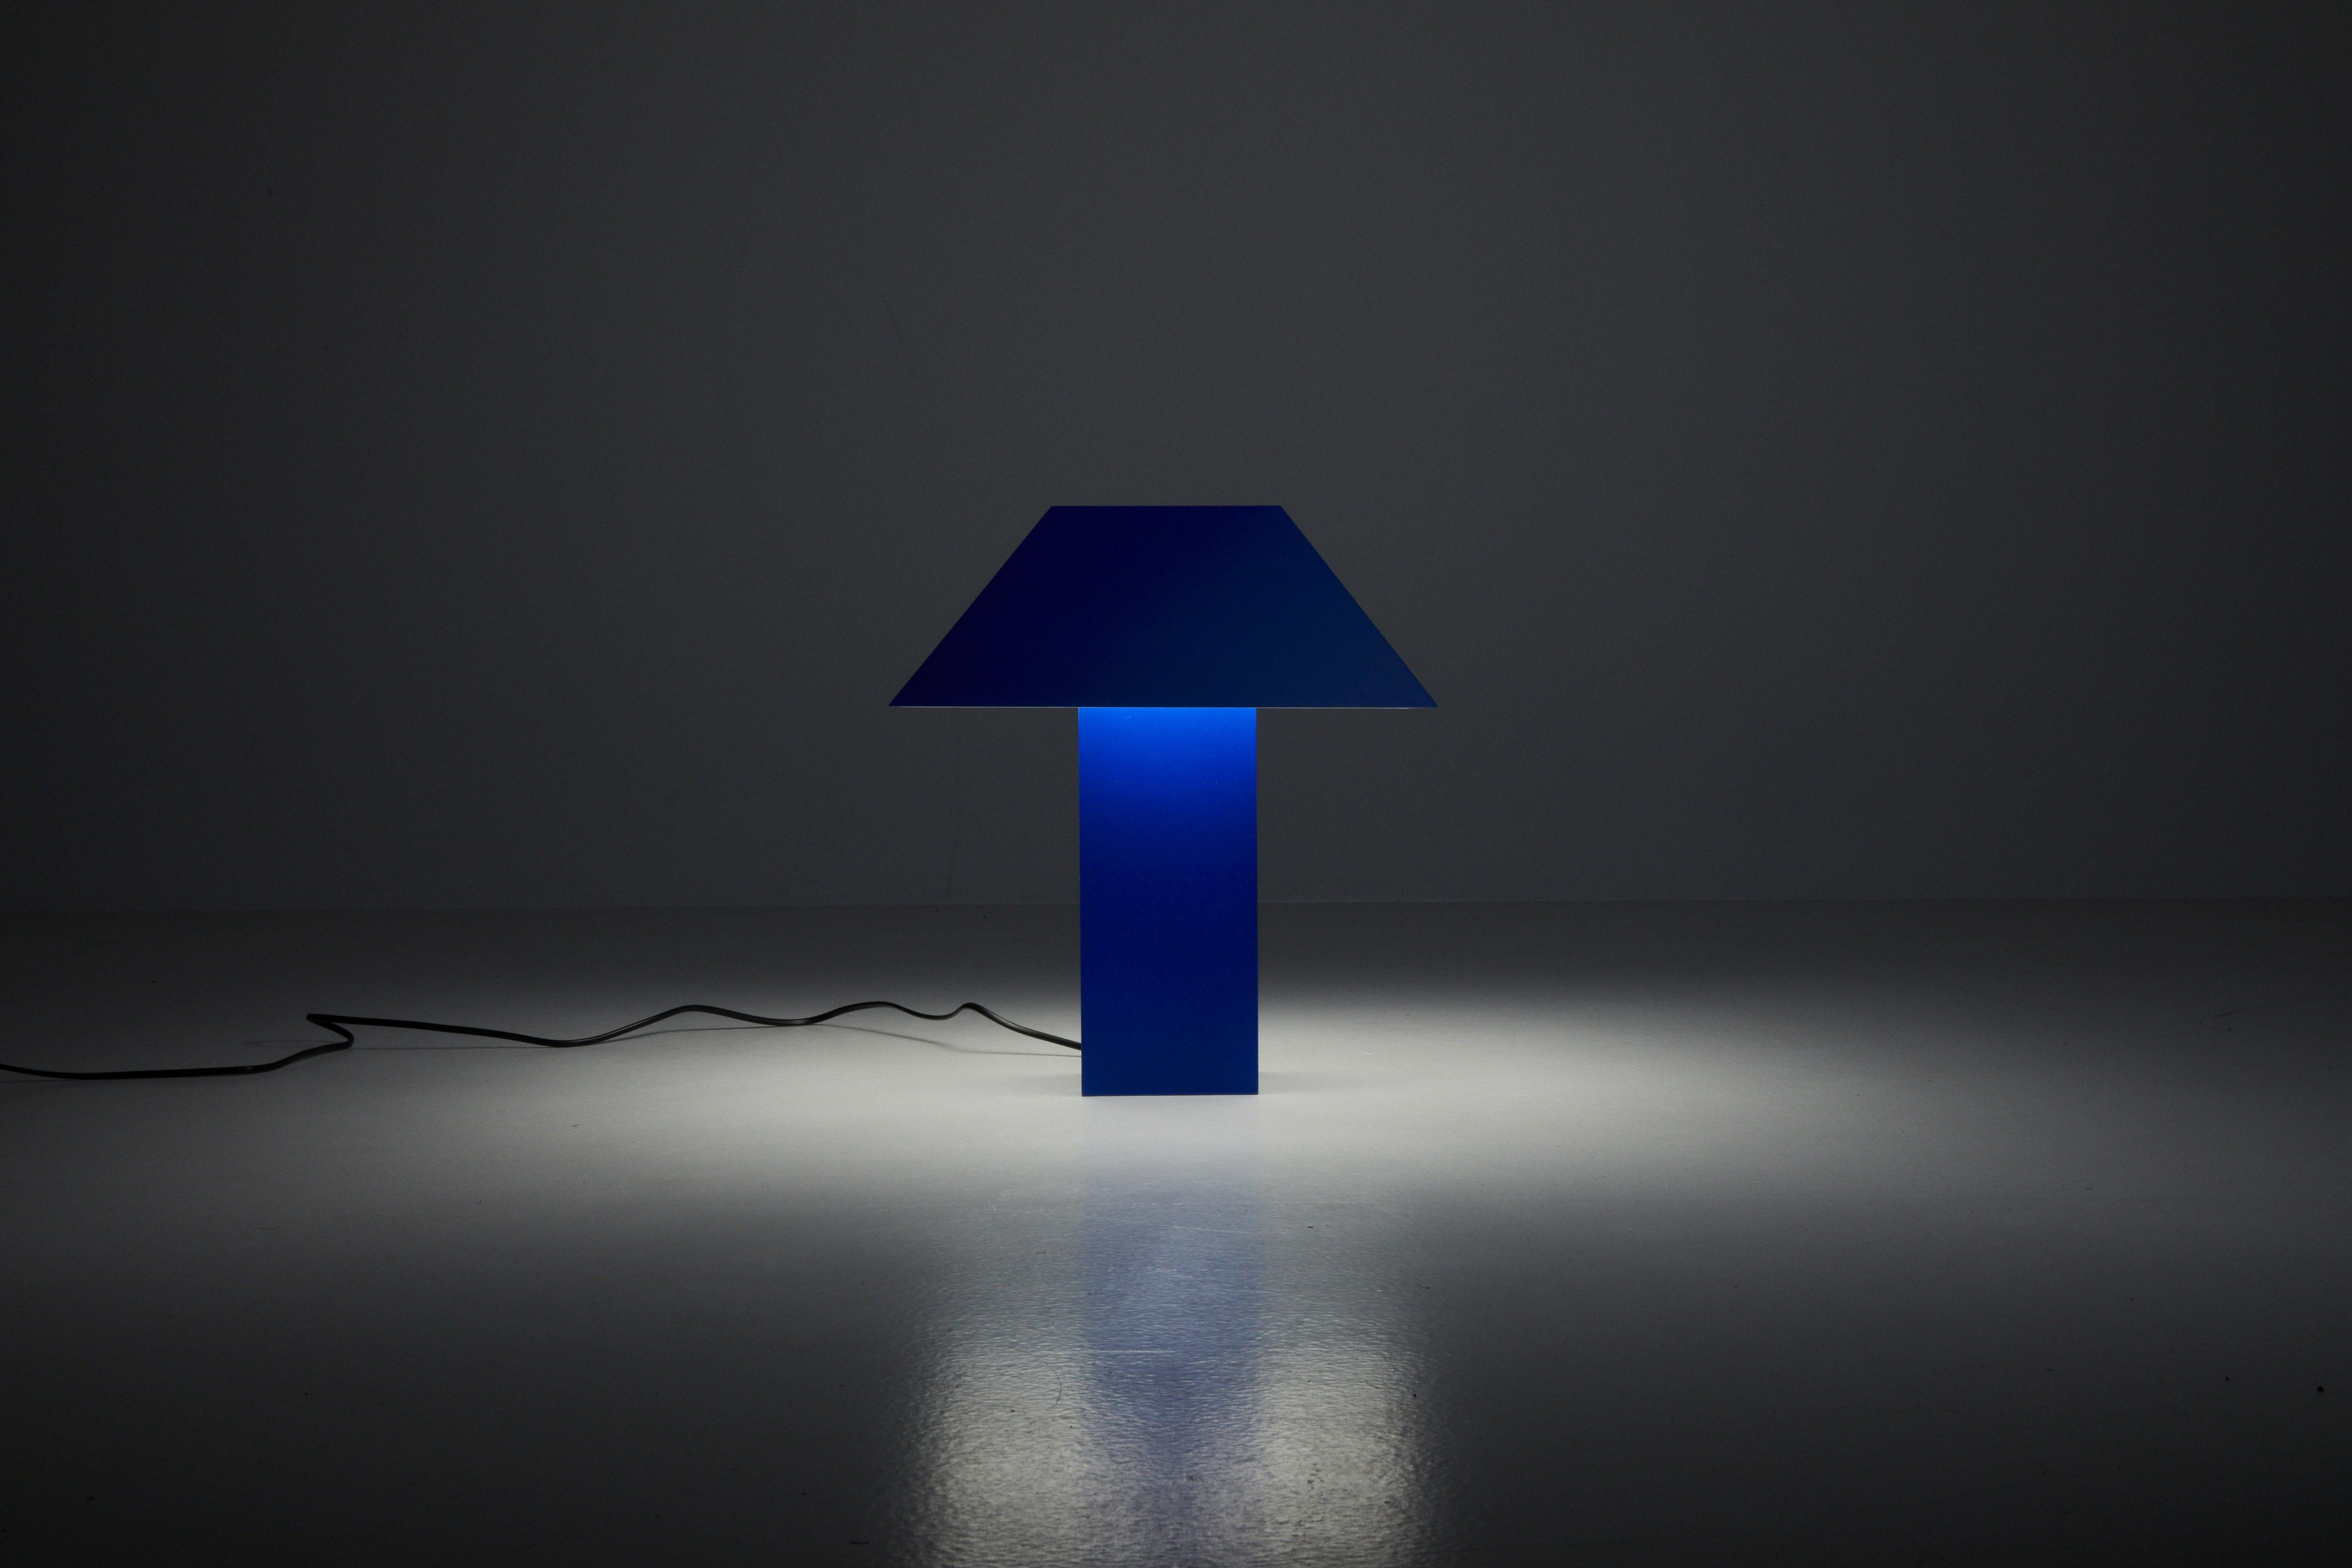 Lampe 53 - Bleu

Derive l'inspiration des lampes en liège des années 70, cette pièce se caractérise de manière unique par un angle de 53 degrés, d'où elle tire son nom.

Cet angle unique sert de point focal et témoigne d'une exploration méticuleuse